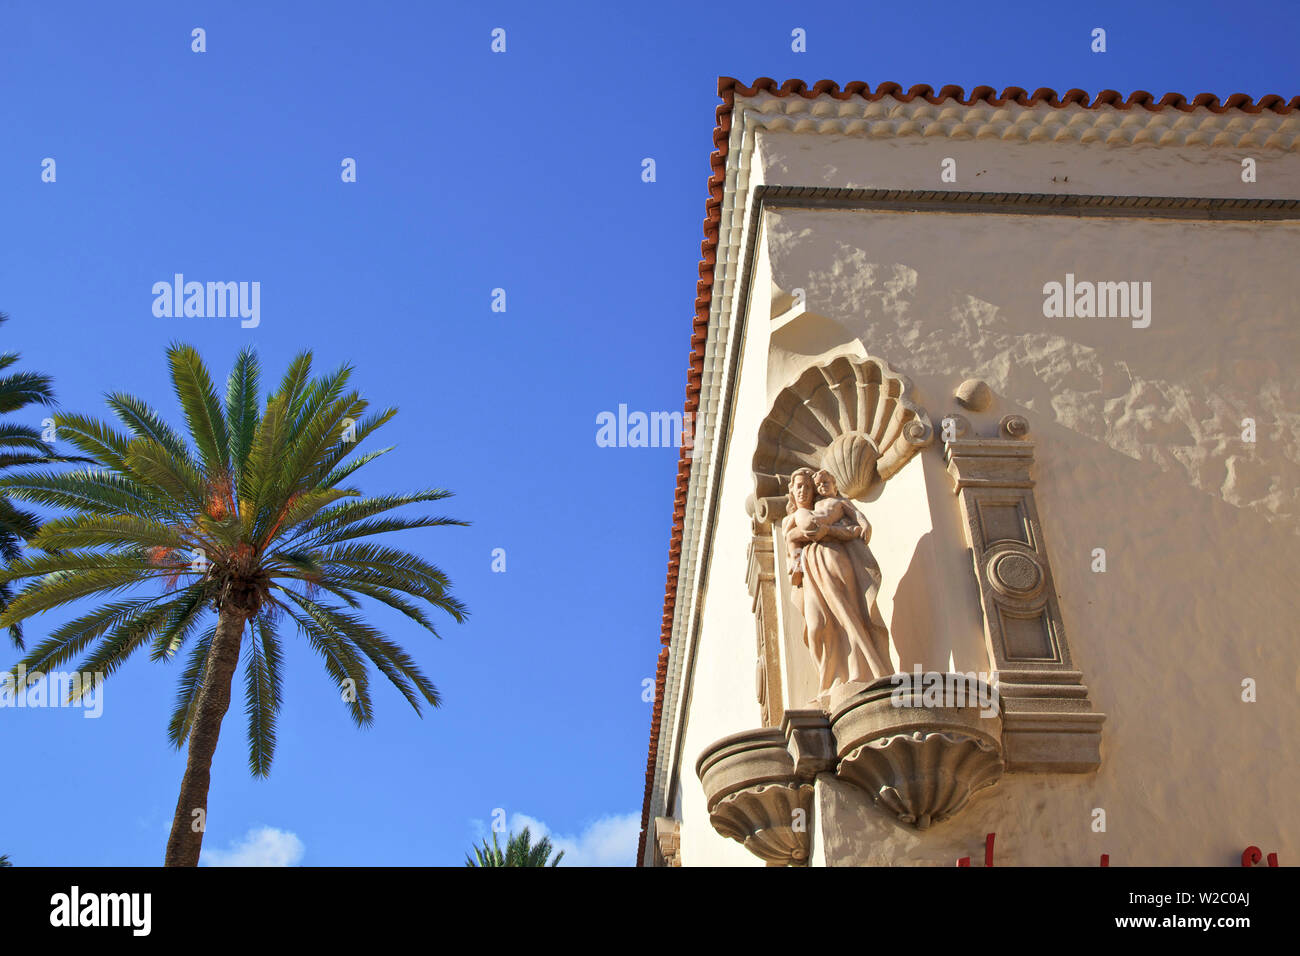 Dettagli architettonici in Pueblo Canario, Parque Doramas, Las Palmas de Gran Canaria Gran Canaria Isole Canarie Spagna, Oceano Atlantico, Europa Foto Stock